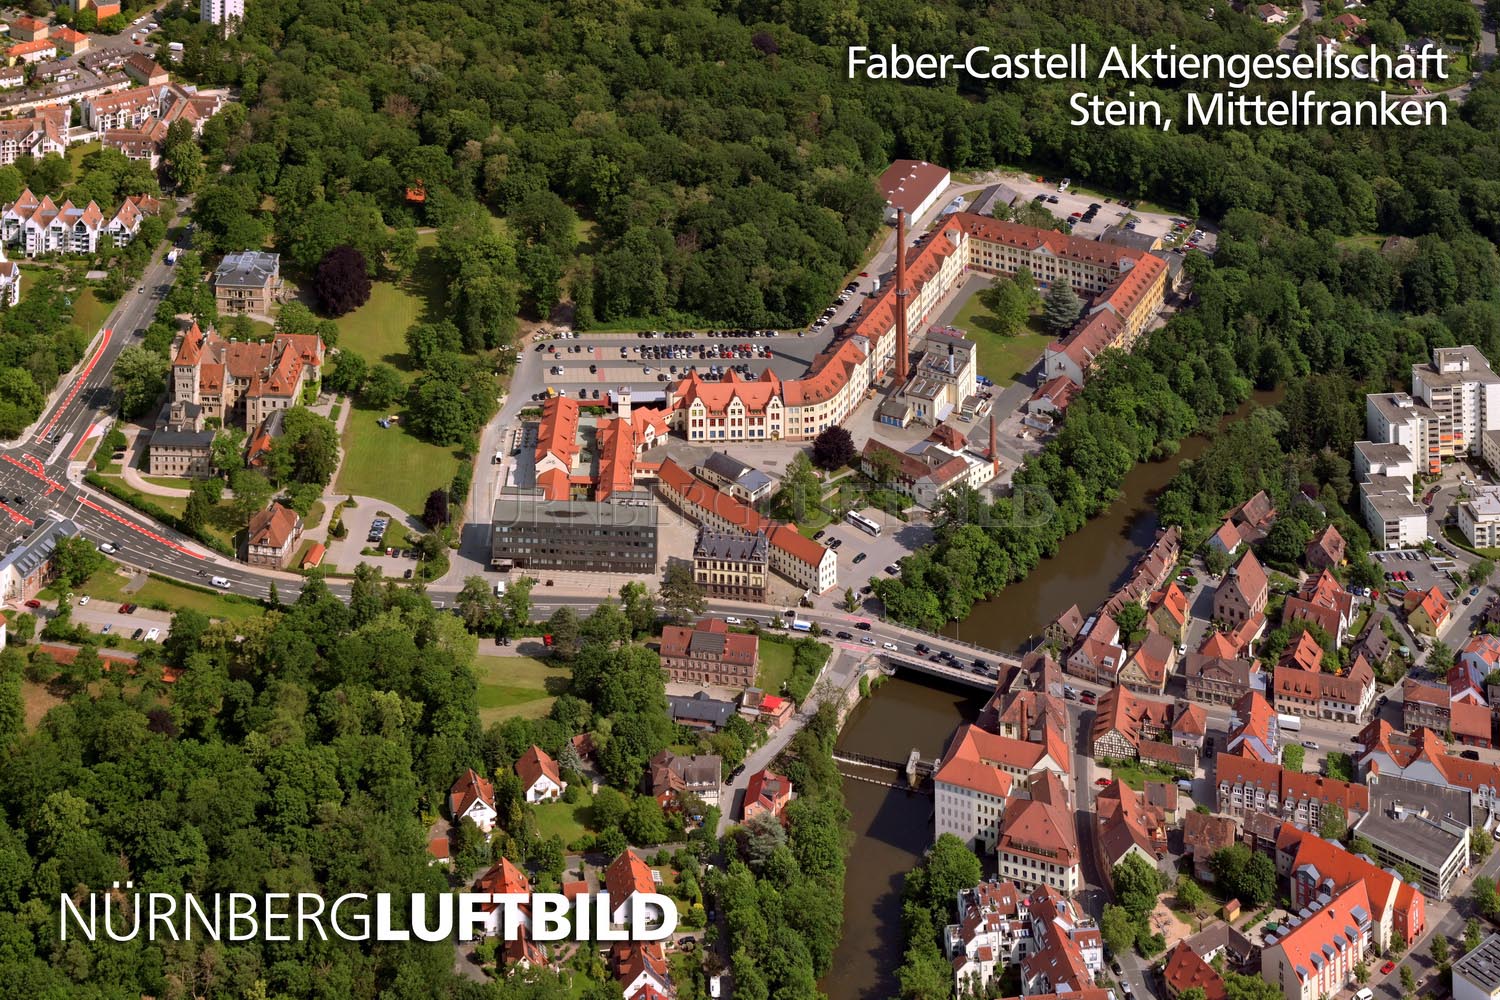 Faber-Castell Aktiengesellschaft, Stein, Mittelfranken